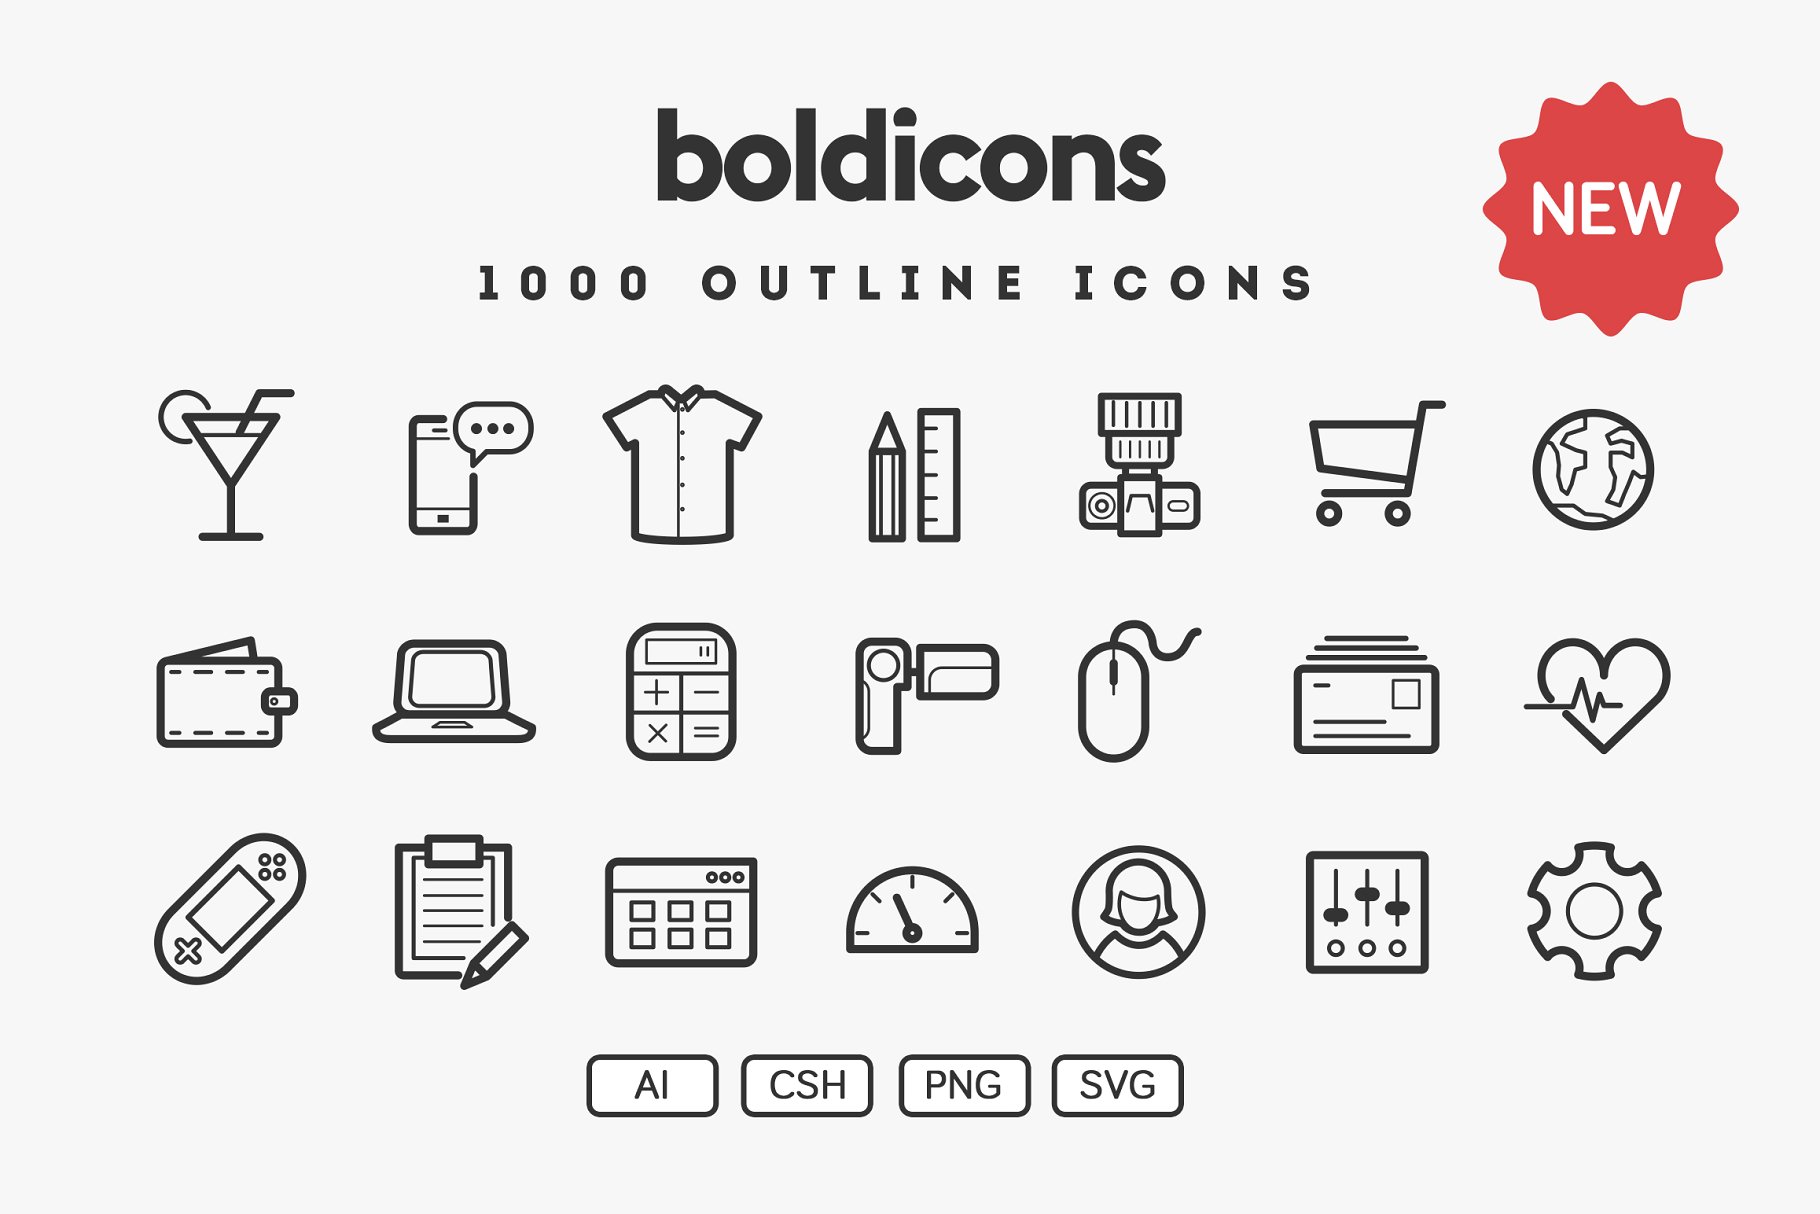 常用的描边图标 Boldicons – 1000 outli